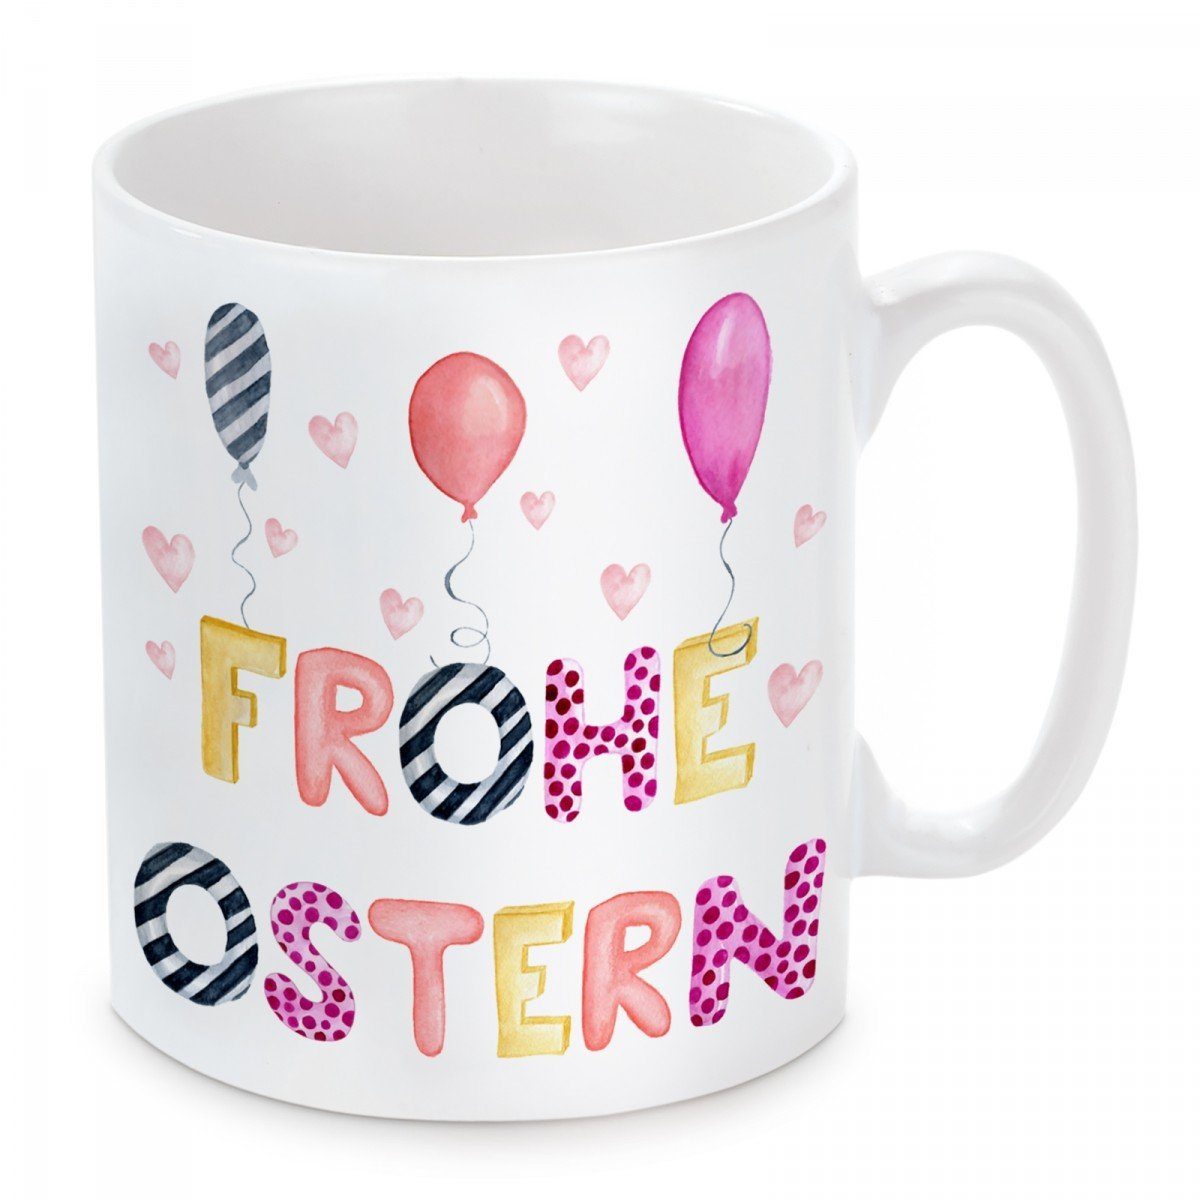 Herzbotschaft Tasse Kaffeebecher mit Motiv Frohe Ostern, Keramik, Kaffeetasse spülmaschinenfest und mikrowellengeeignet